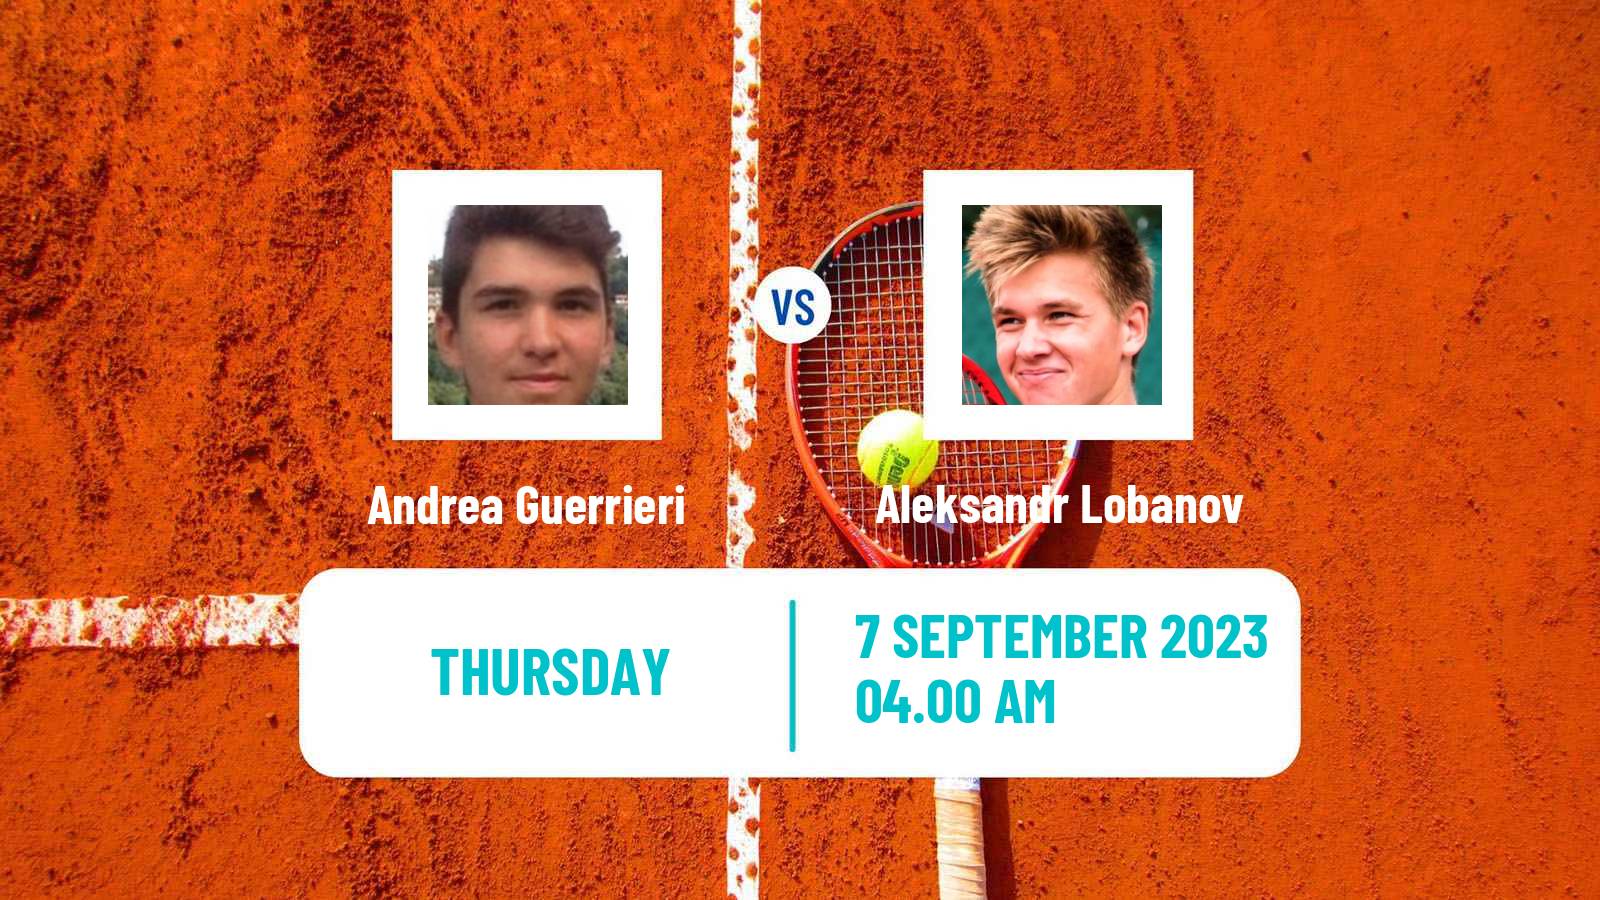 Tennis ITF M15 Monastir 36 Men Andrea Guerrieri - Aleksandr Lobanov